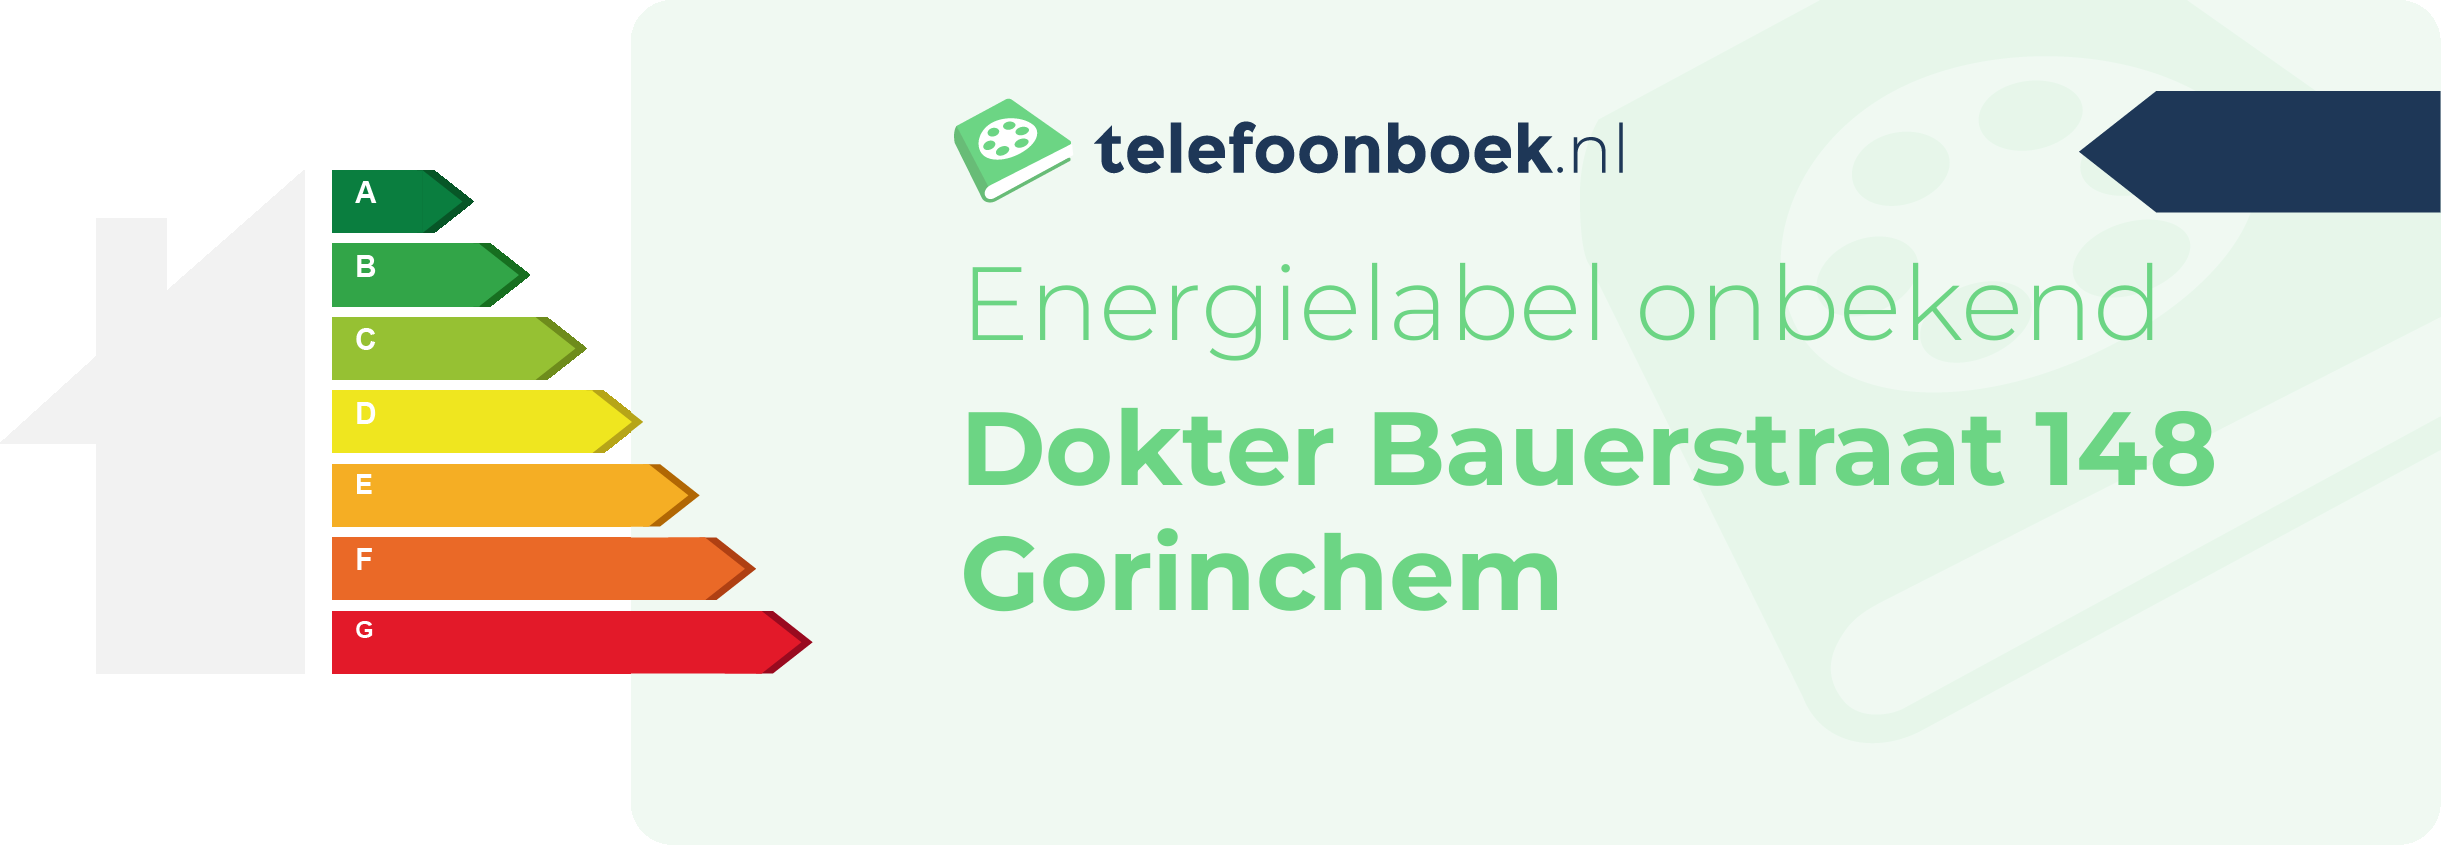 Energielabel Dokter Bauerstraat 148 Gorinchem